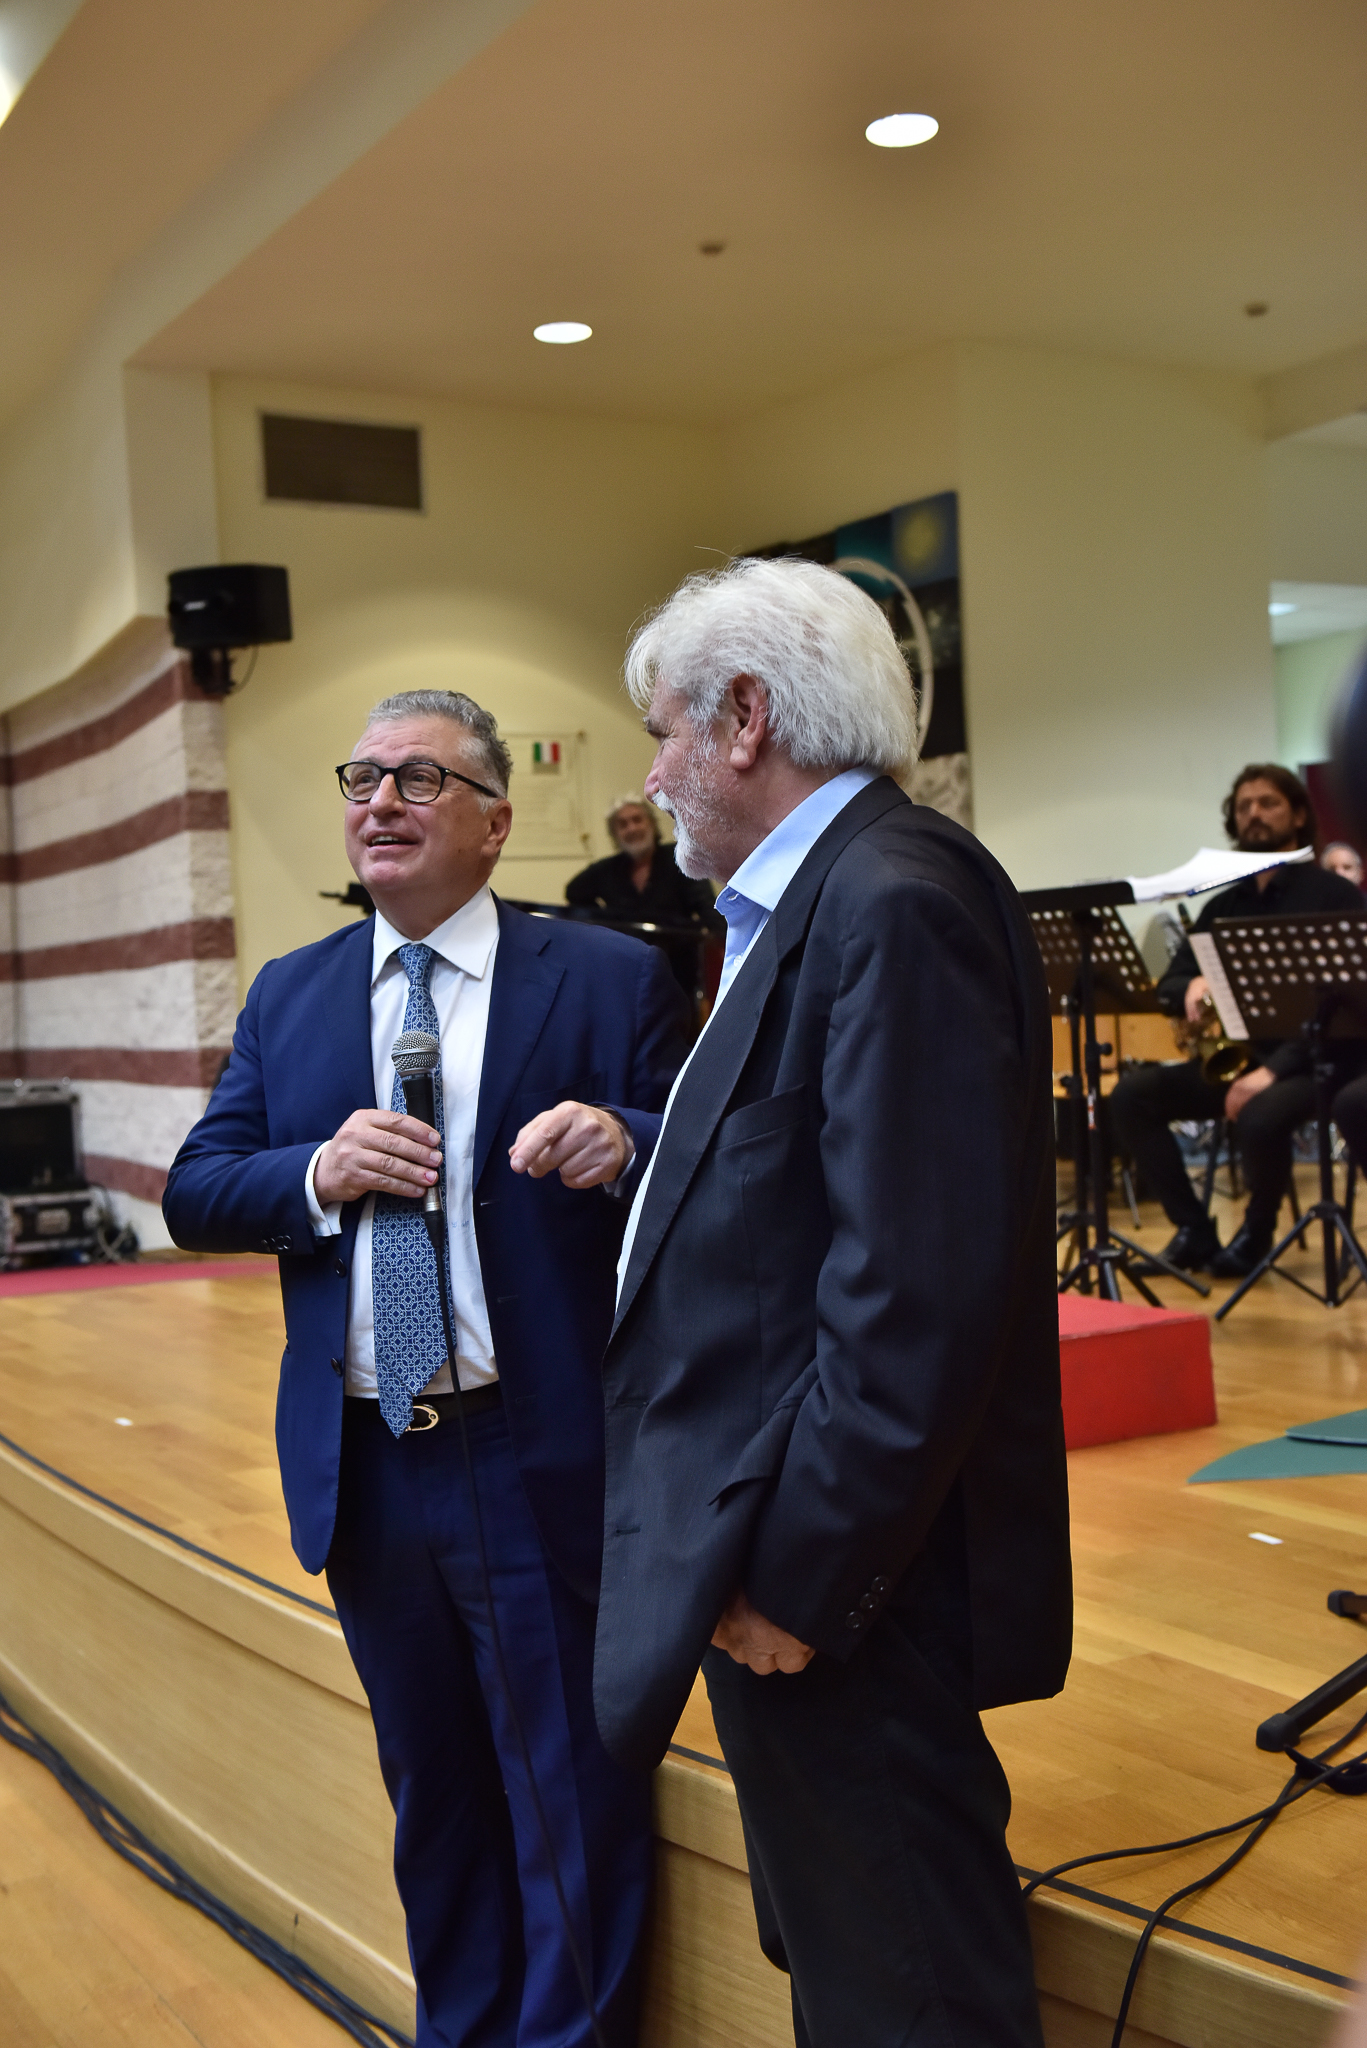 gallery “Tor Vergata” ospita e premia Ennio Morricone nel XXV anniversario di “Roma Sinfonietta”